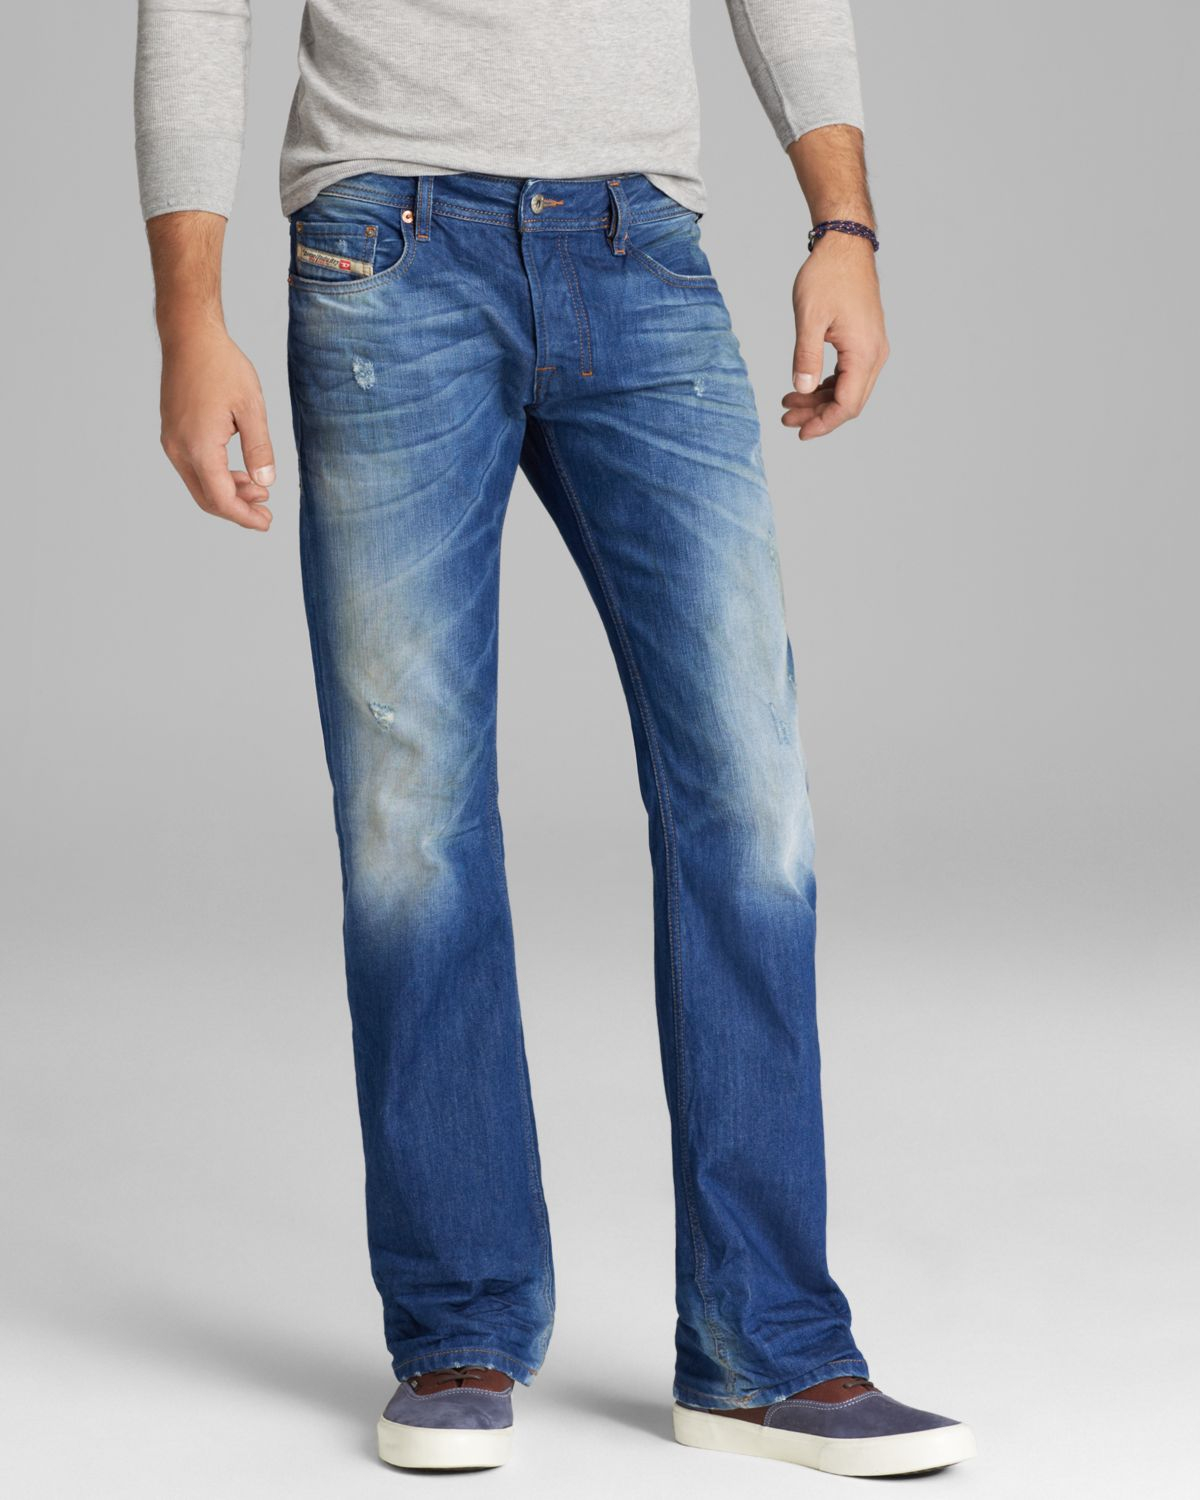 DIESEL Jeans Zatiny Bootcut Fit in 823u in Blue for Men - Lyst